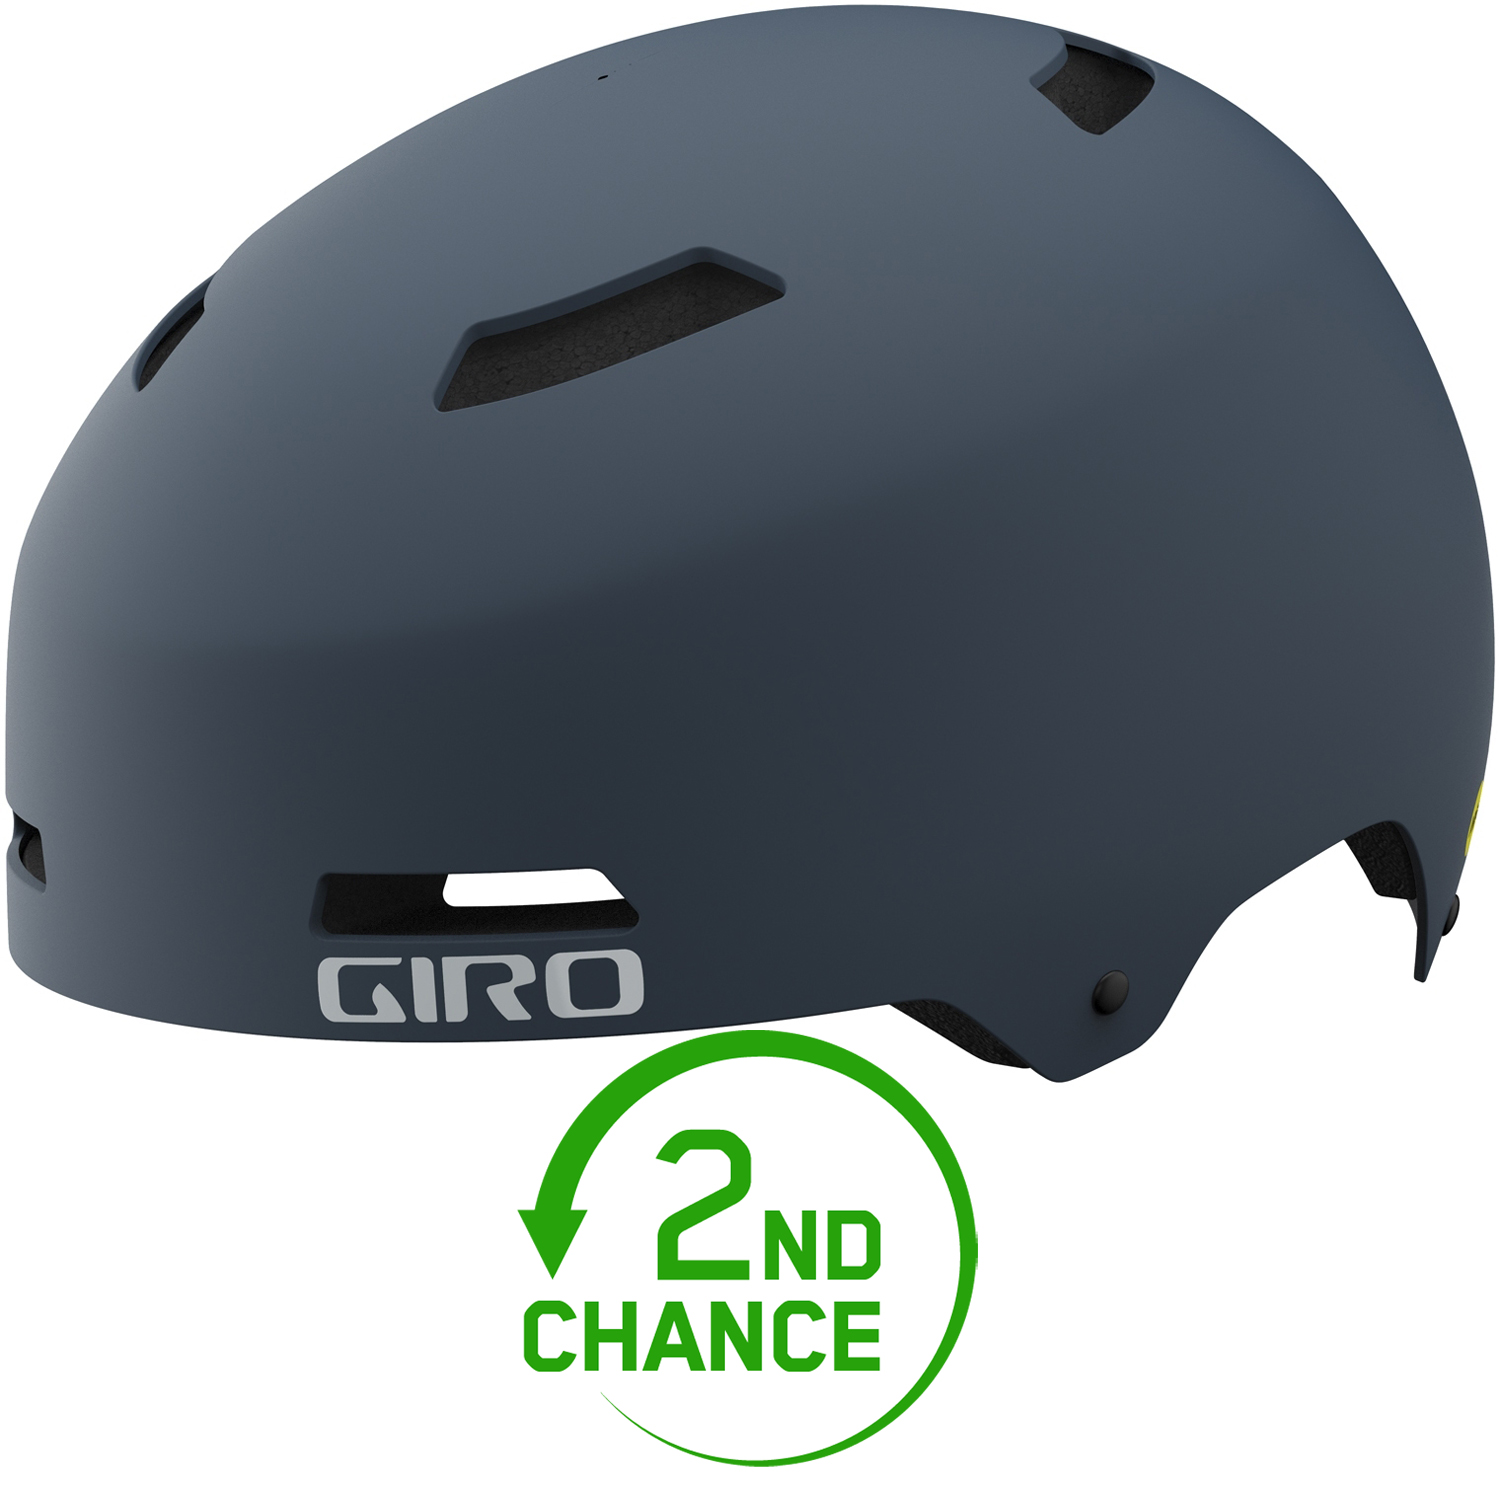 Produktbild von Giro Quarter FS Helm - matte portaro grey - B-Ware